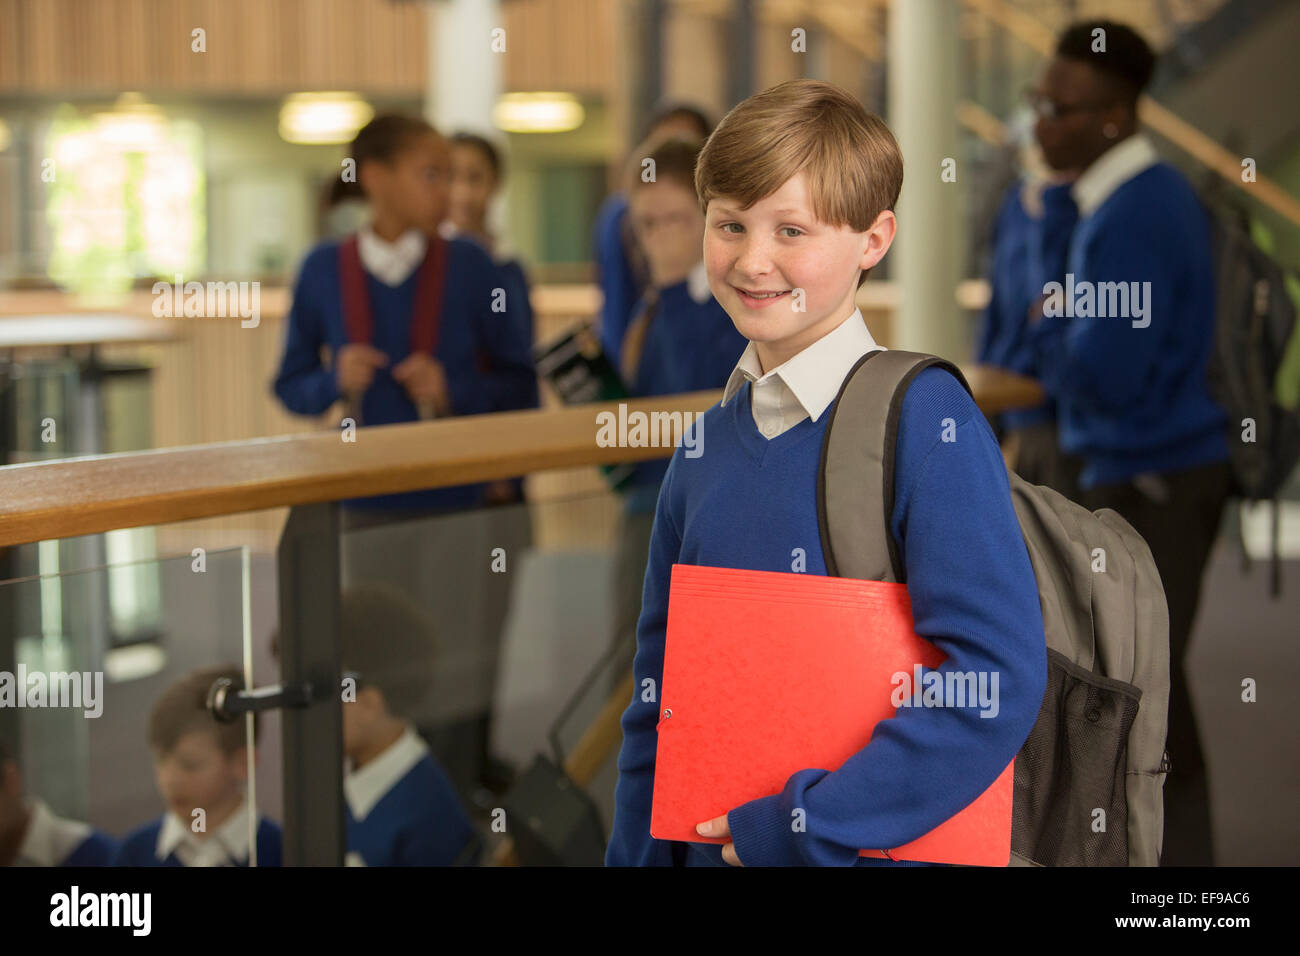 Retrato de elementary school boy vestido de azul uniforme escolar en la escuela permanente pasillo Foto de stock